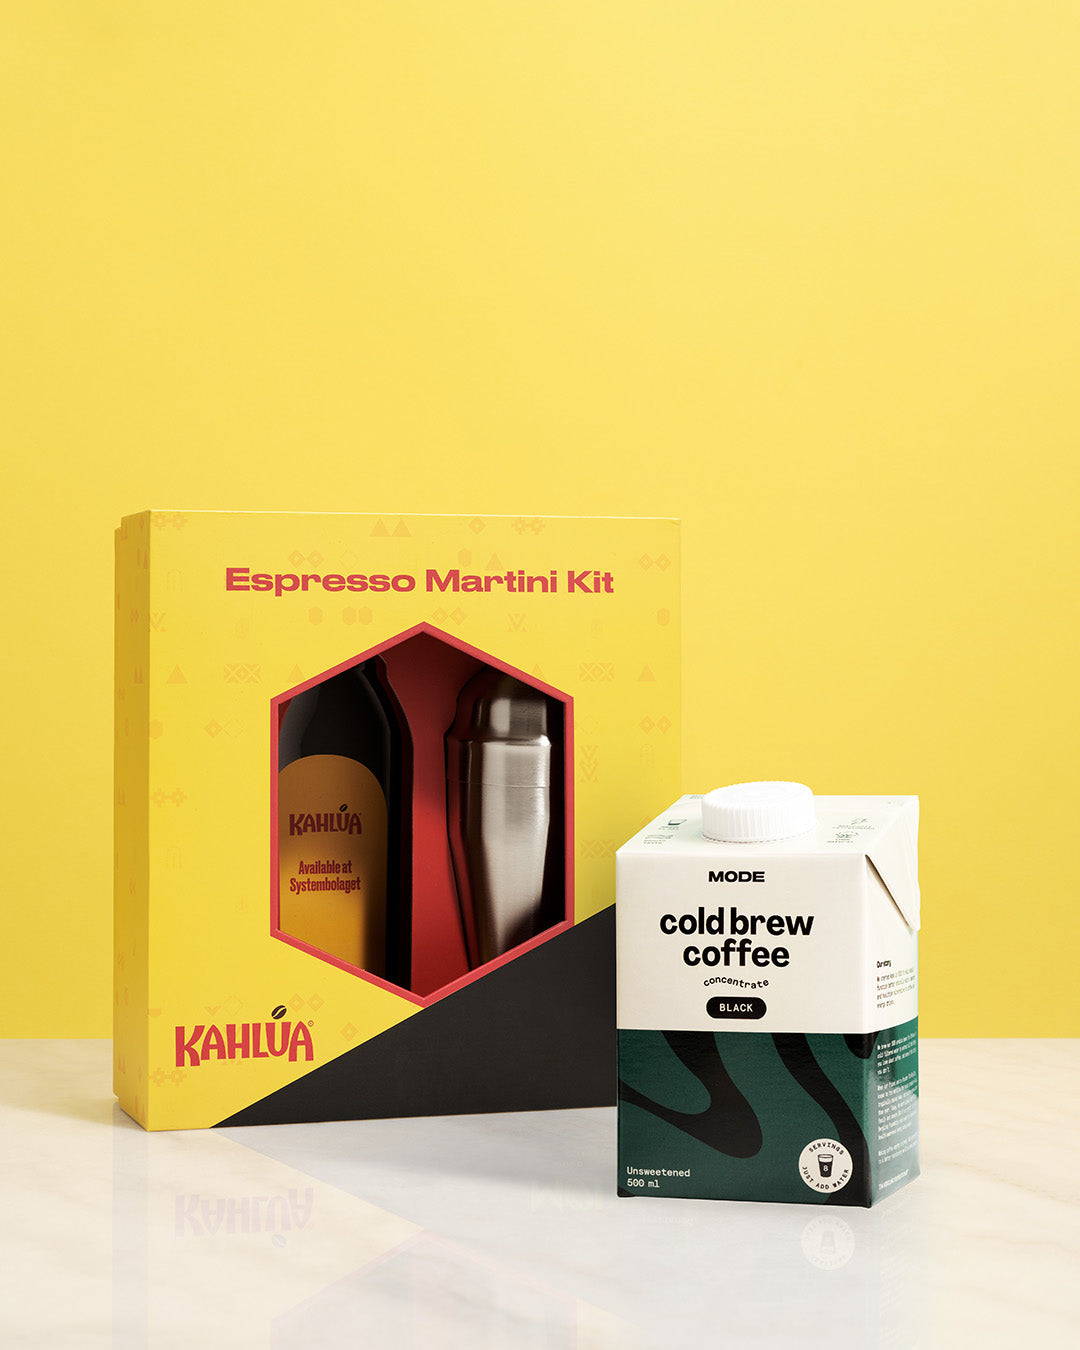 Espresso Martini kit - limited edition